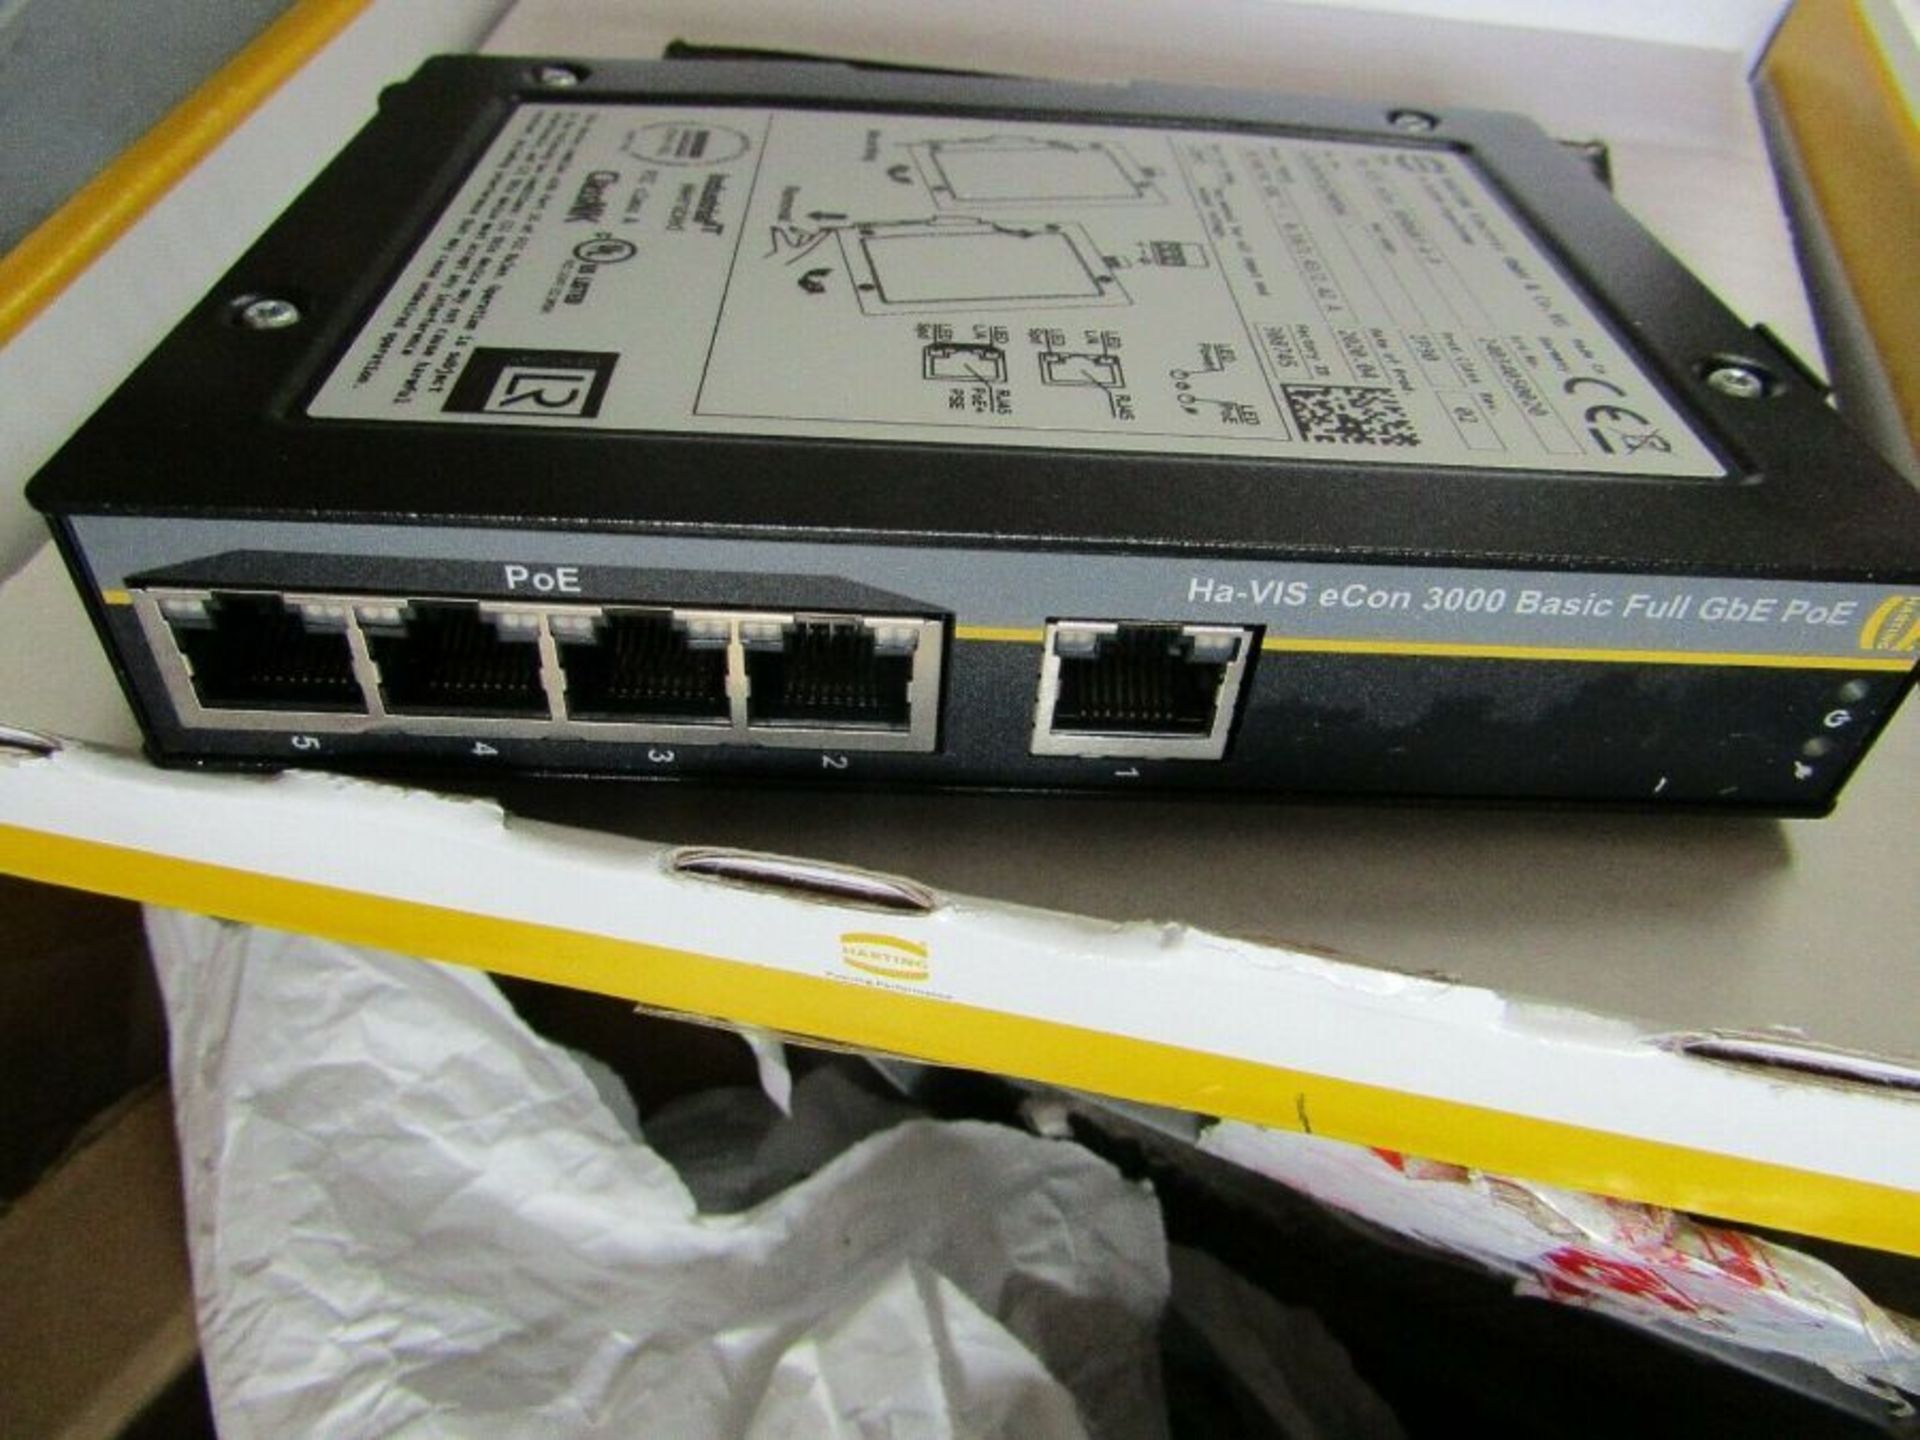 Harting Gigabit Ethernet Switch, RJ45 5 port 54Vdc Din Rail - Head 3008128894 - Image 2 of 8